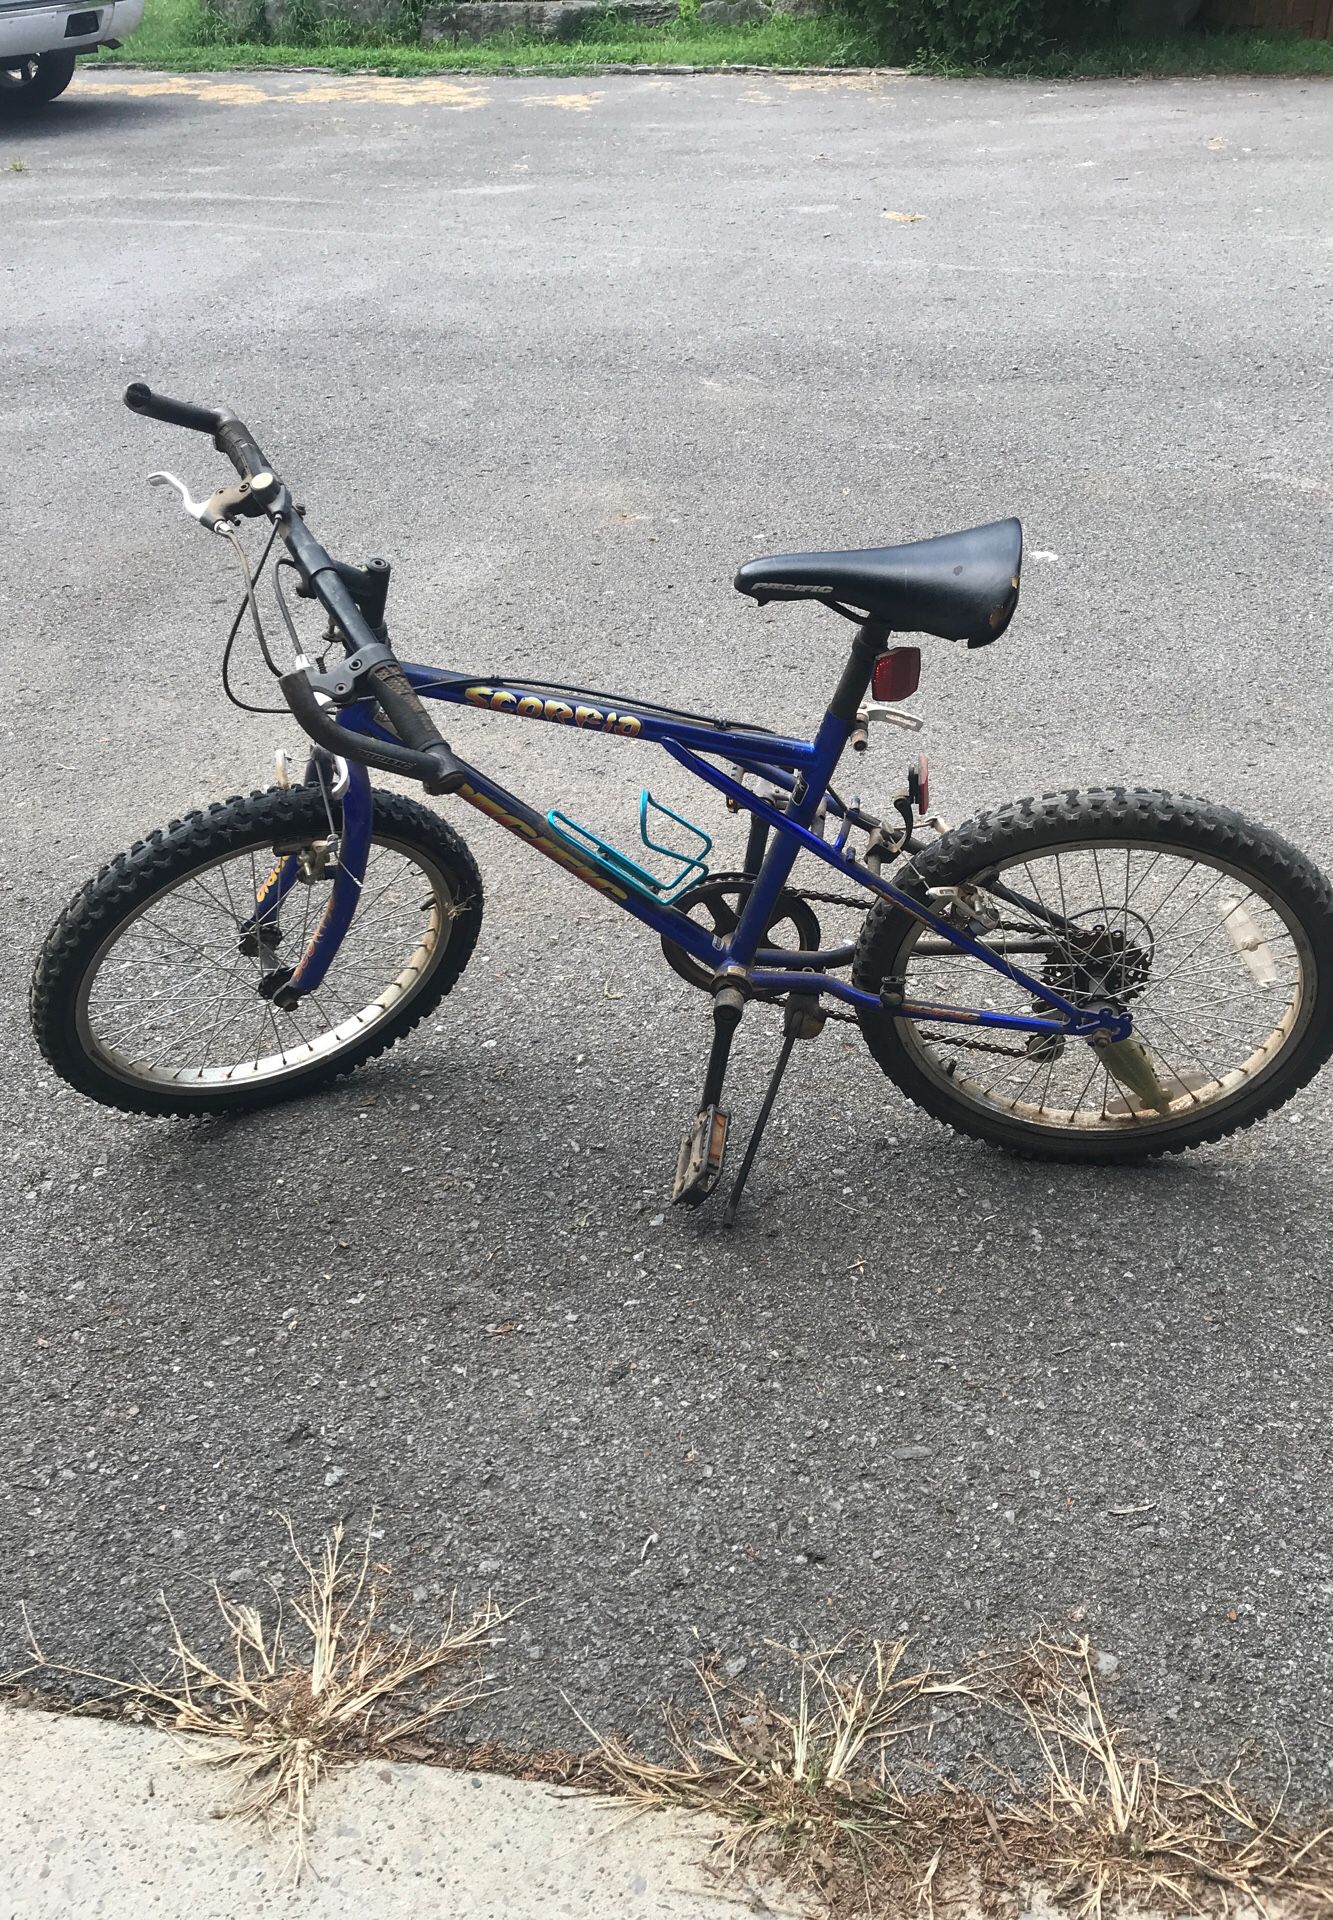 Used bike